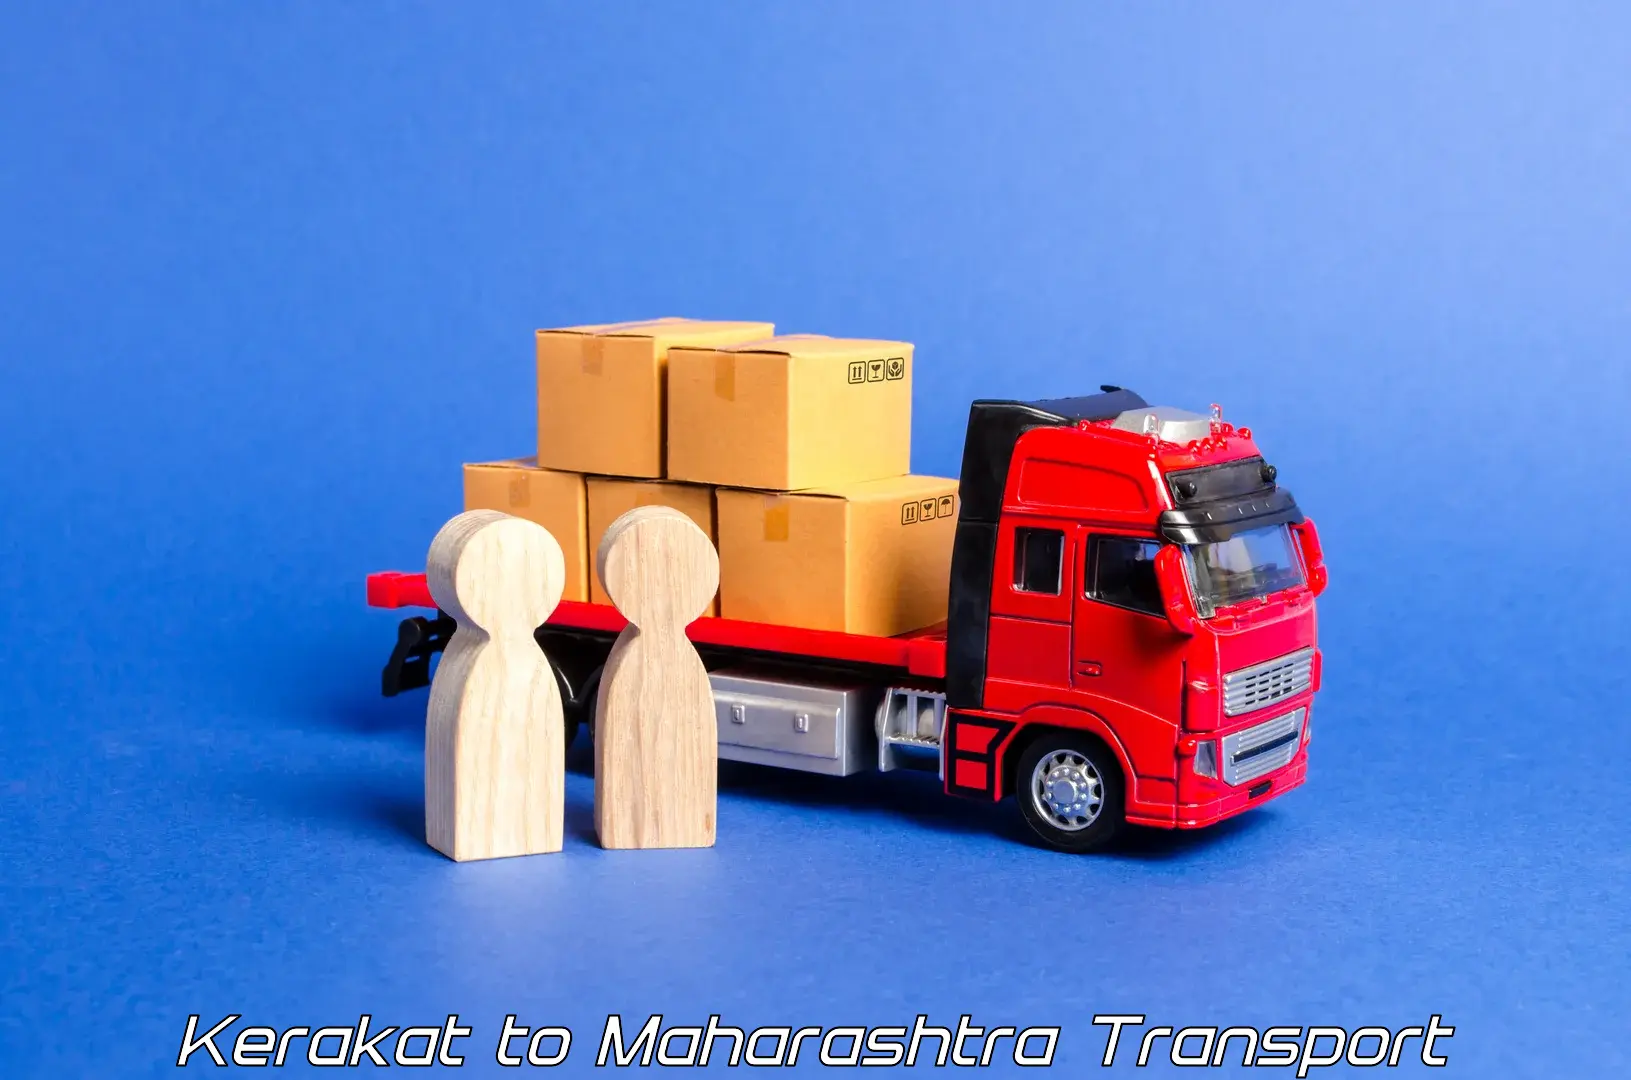 Shipping partner Kerakat to Maharashtra